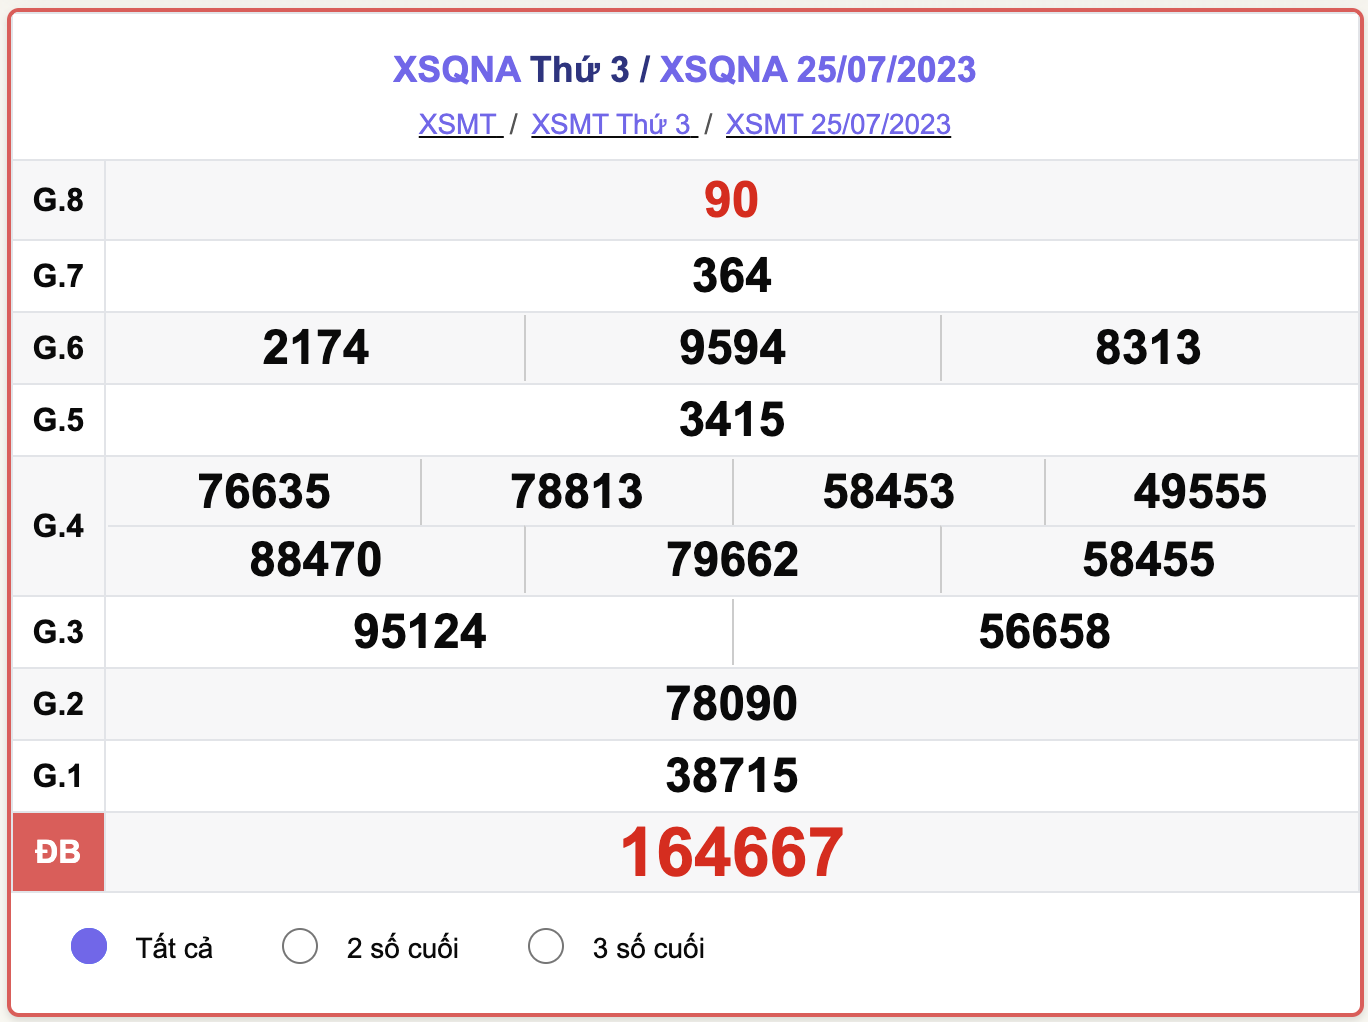 XSMT thứ 3, kết quả xổ số Quảng Nam ngày 25/7/2023